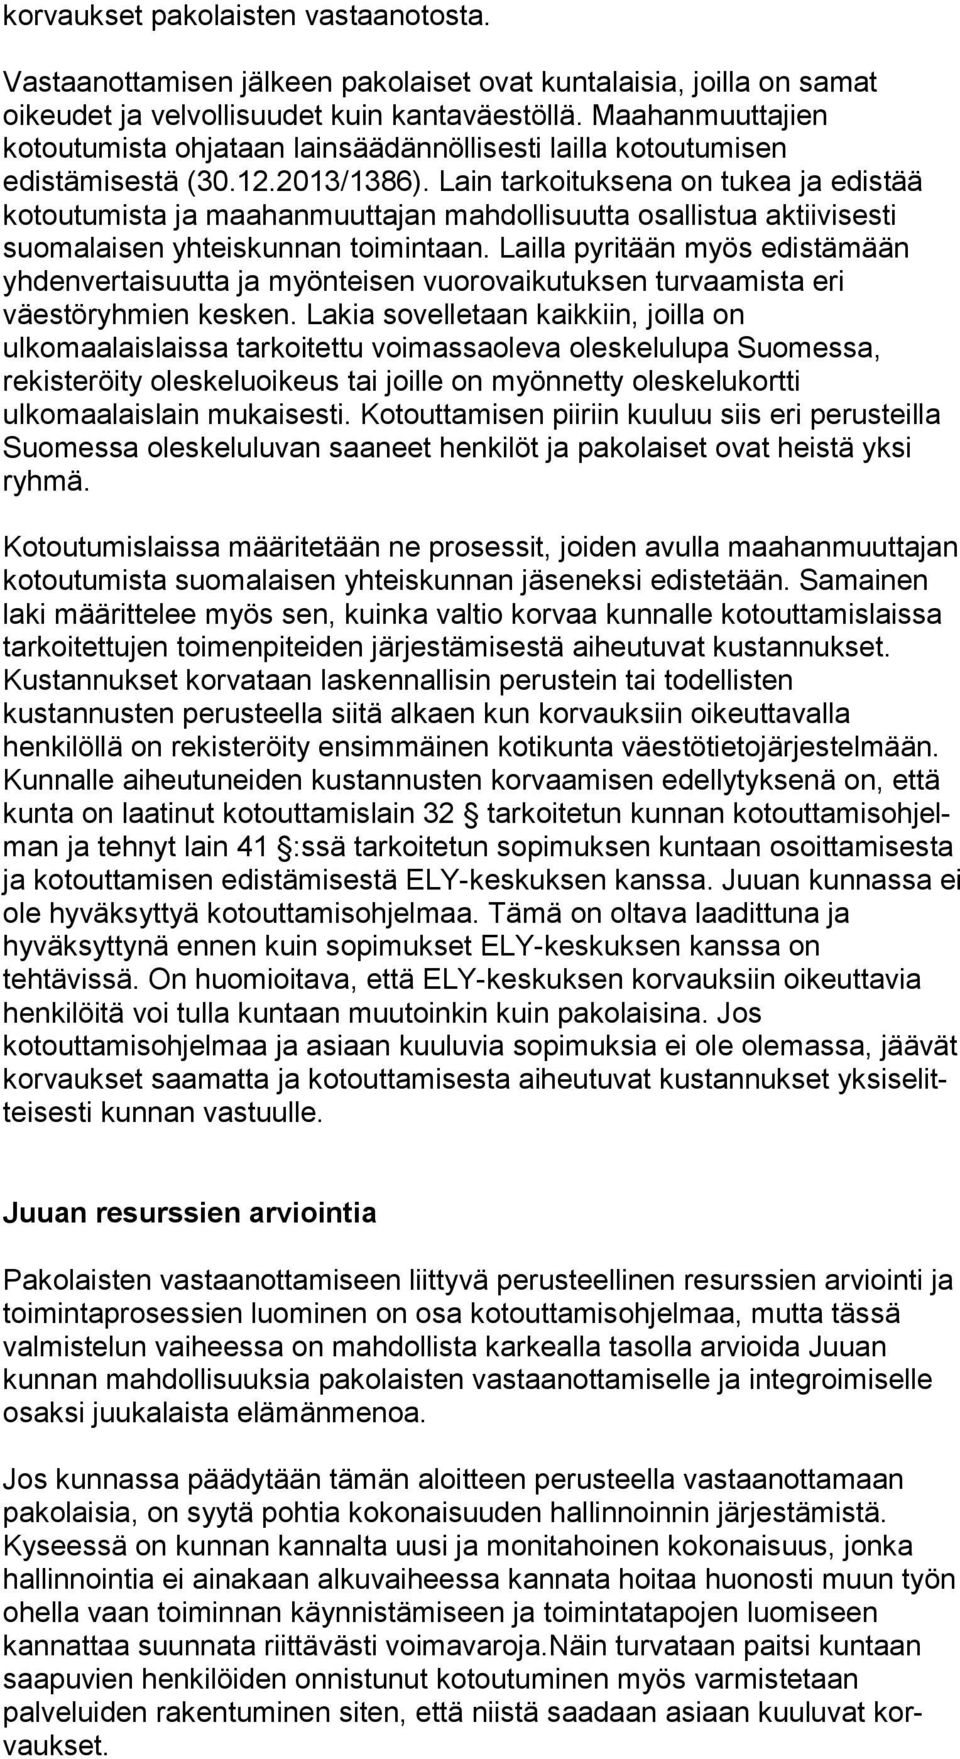 Lain tarkoituksena on tu kea ja edistää kotoutumista ja maahanmuuttajan mahdollisuutta osal lis tua aktiivisesti suomalaisen yhteiskunnan toimintaan.